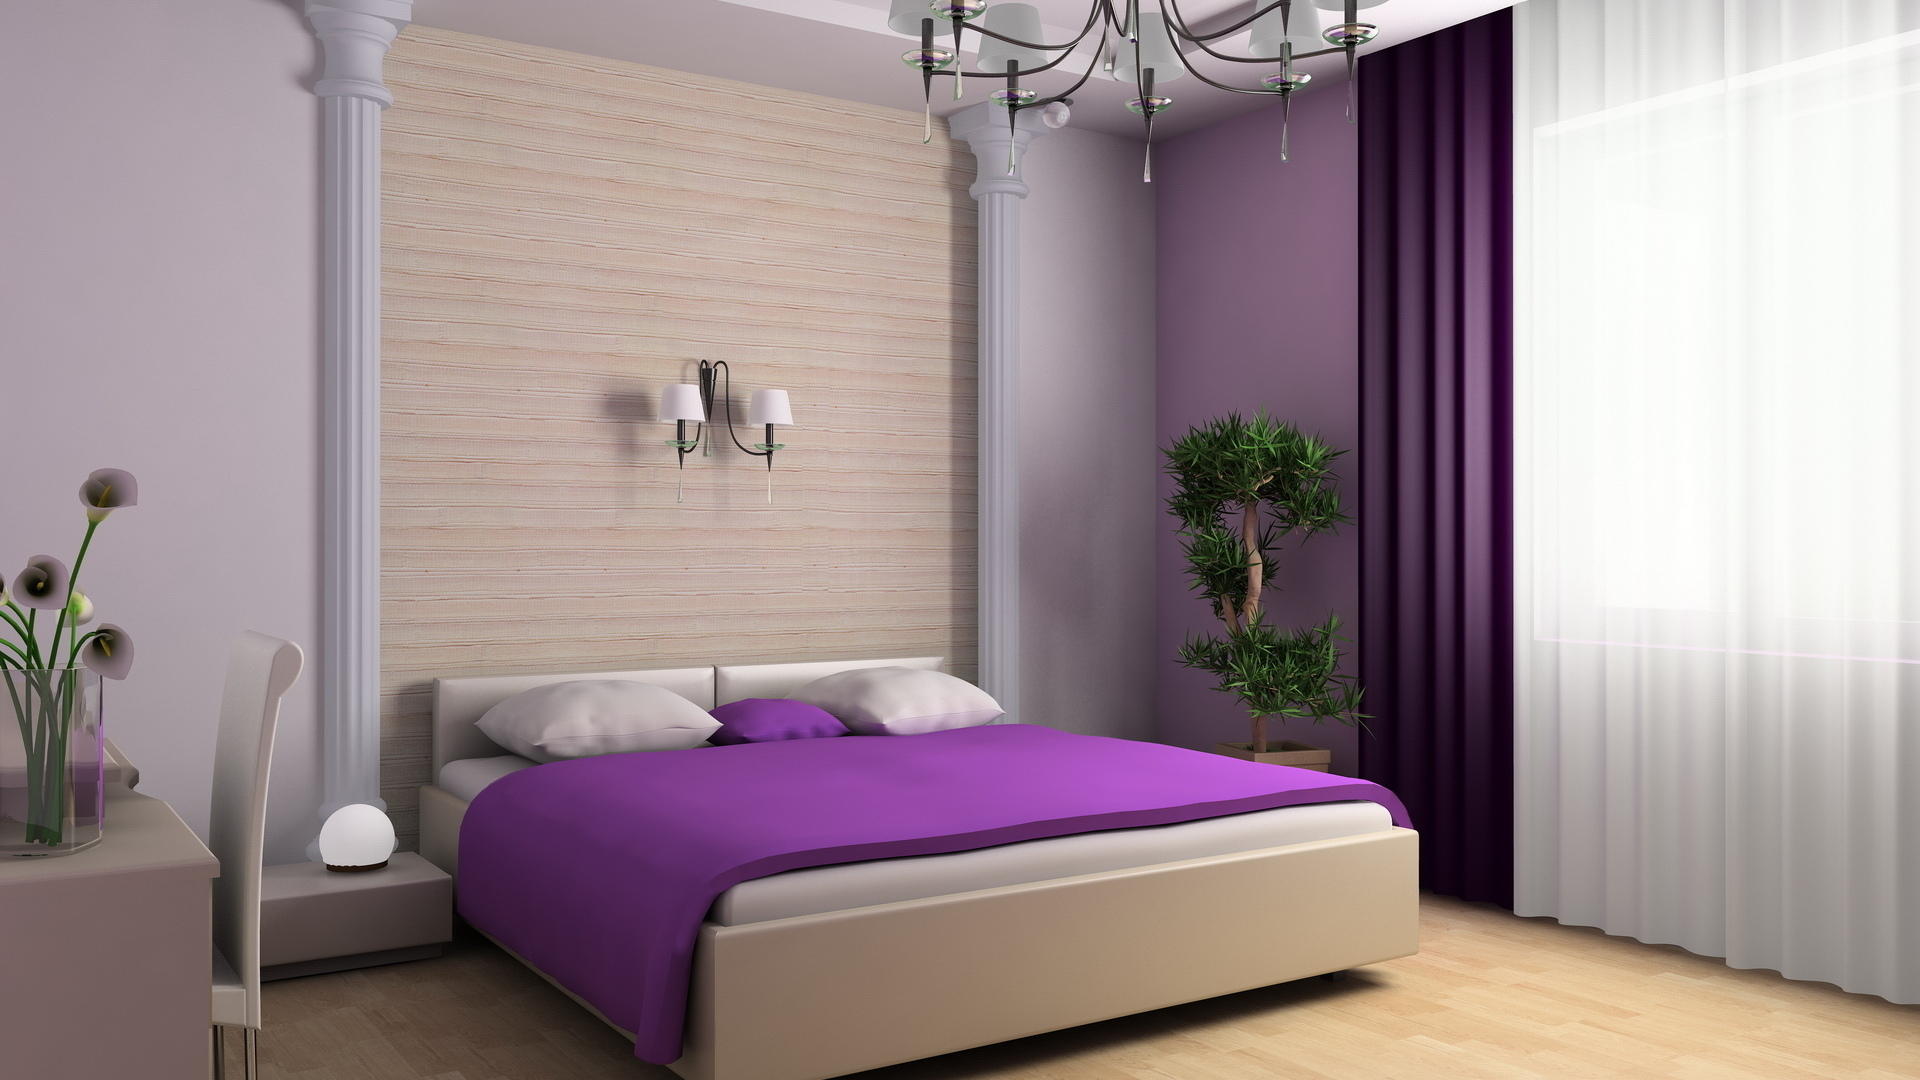 Фиолетовый цвет поможет сделать спальню уютной, обеспечит комфортный сон и отдых 